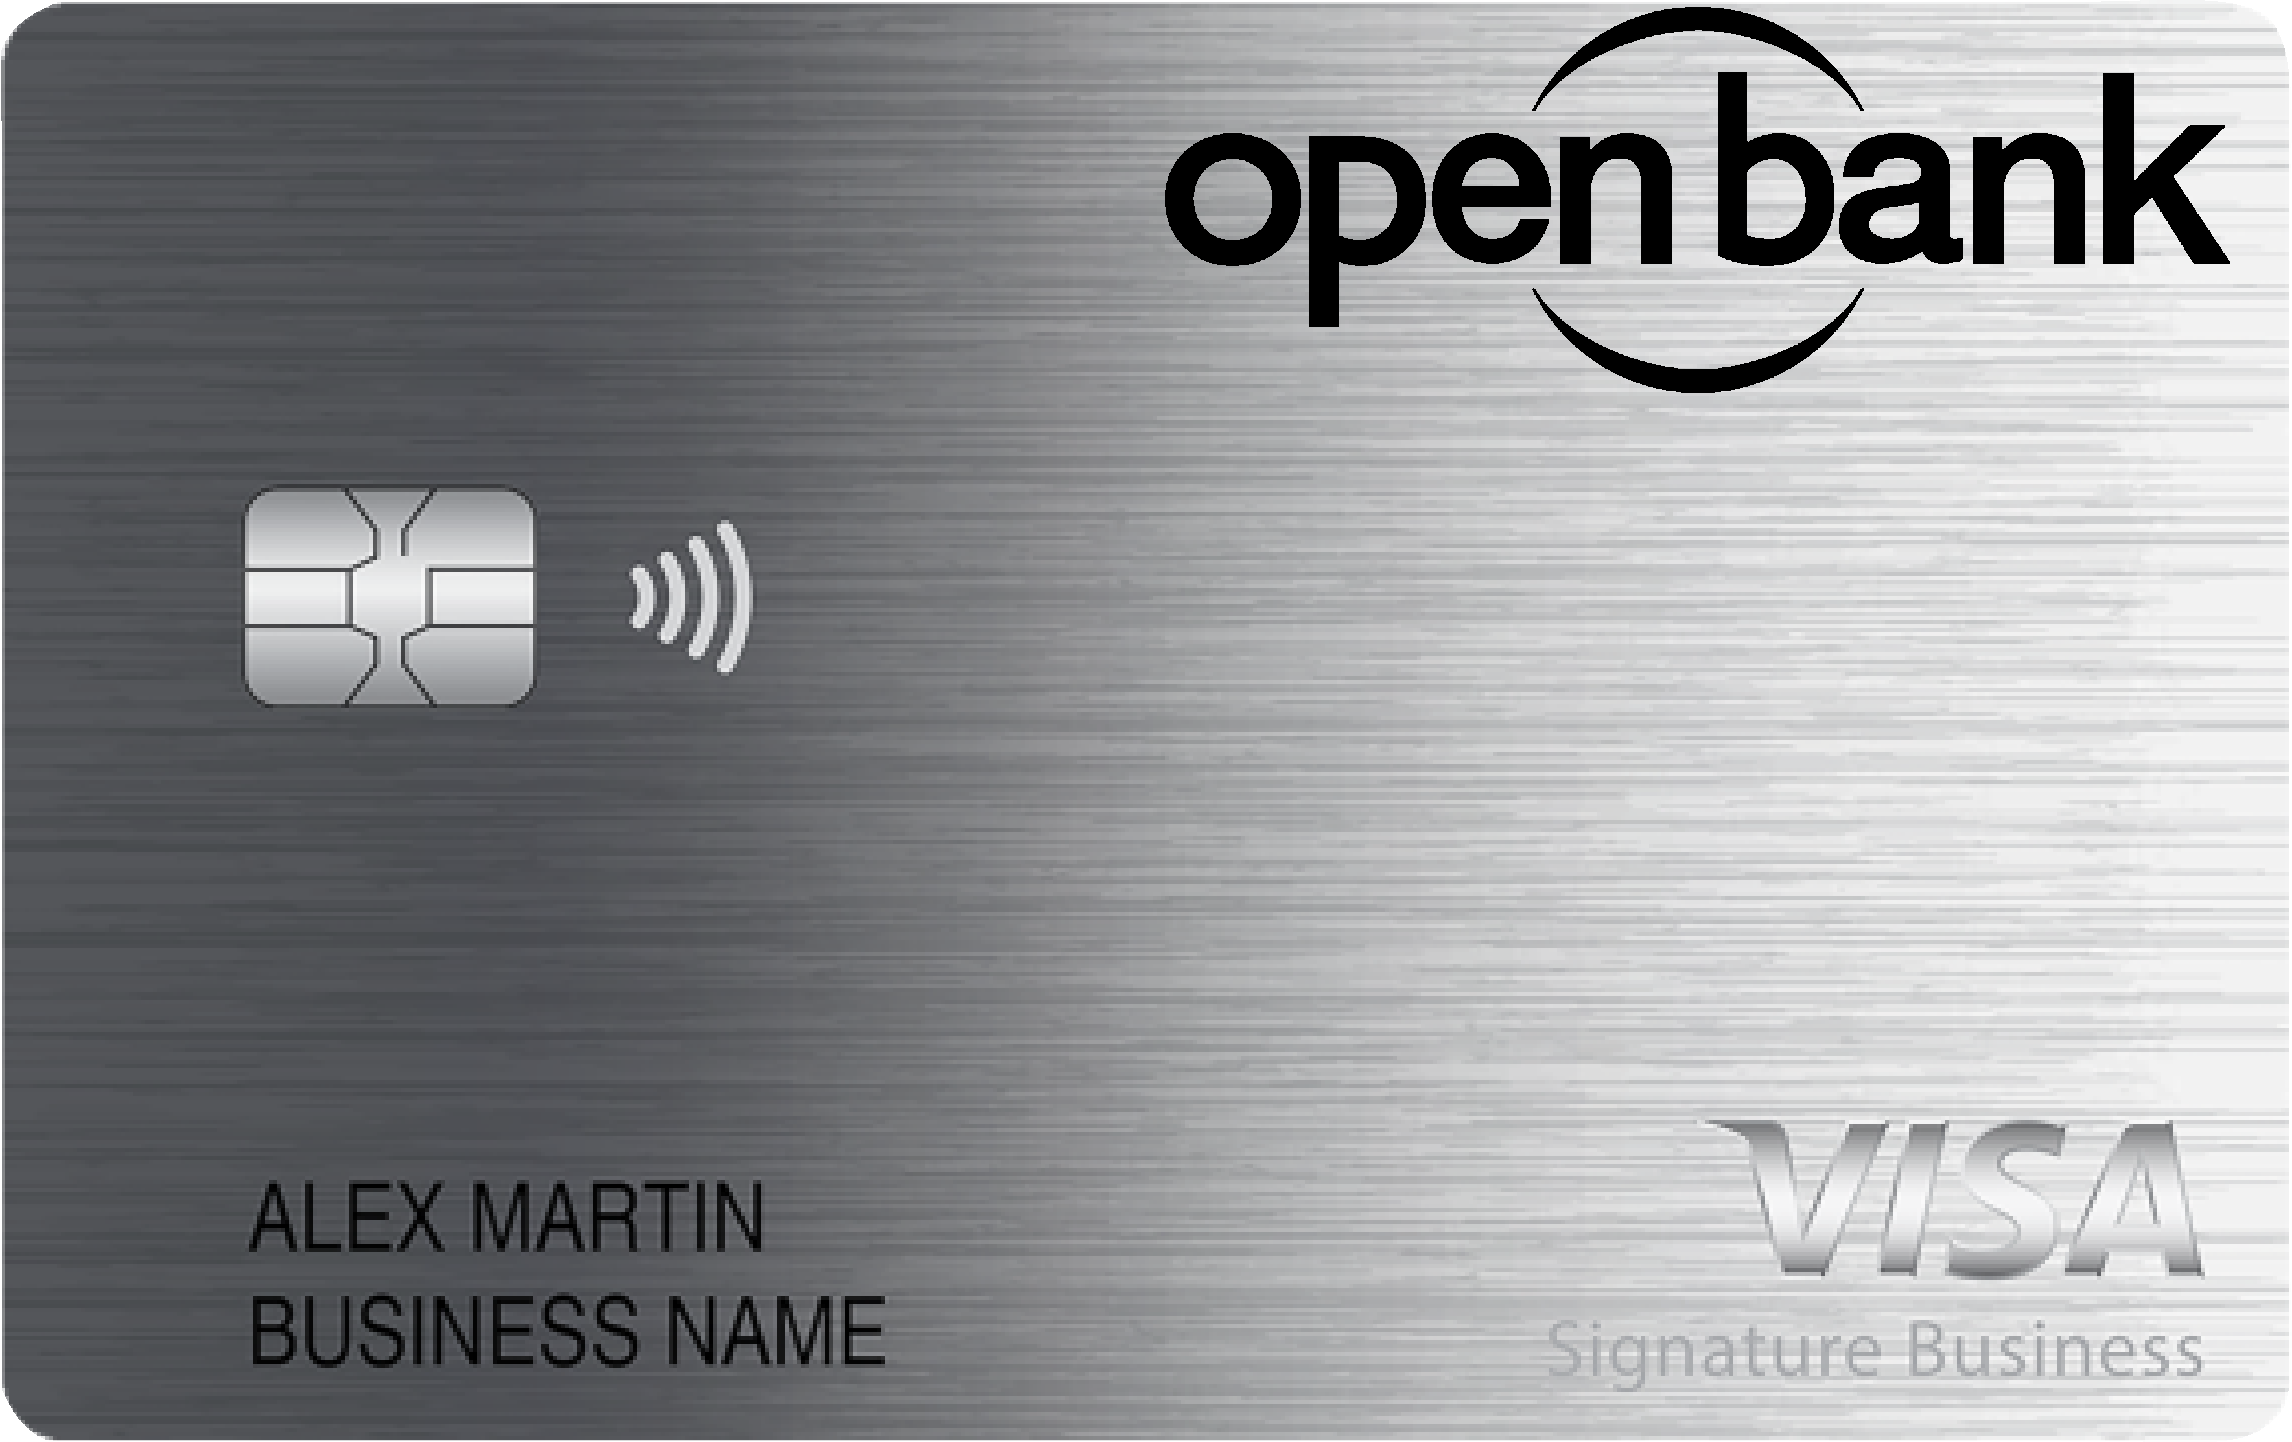 Open Bank Smart Business Rewards Card